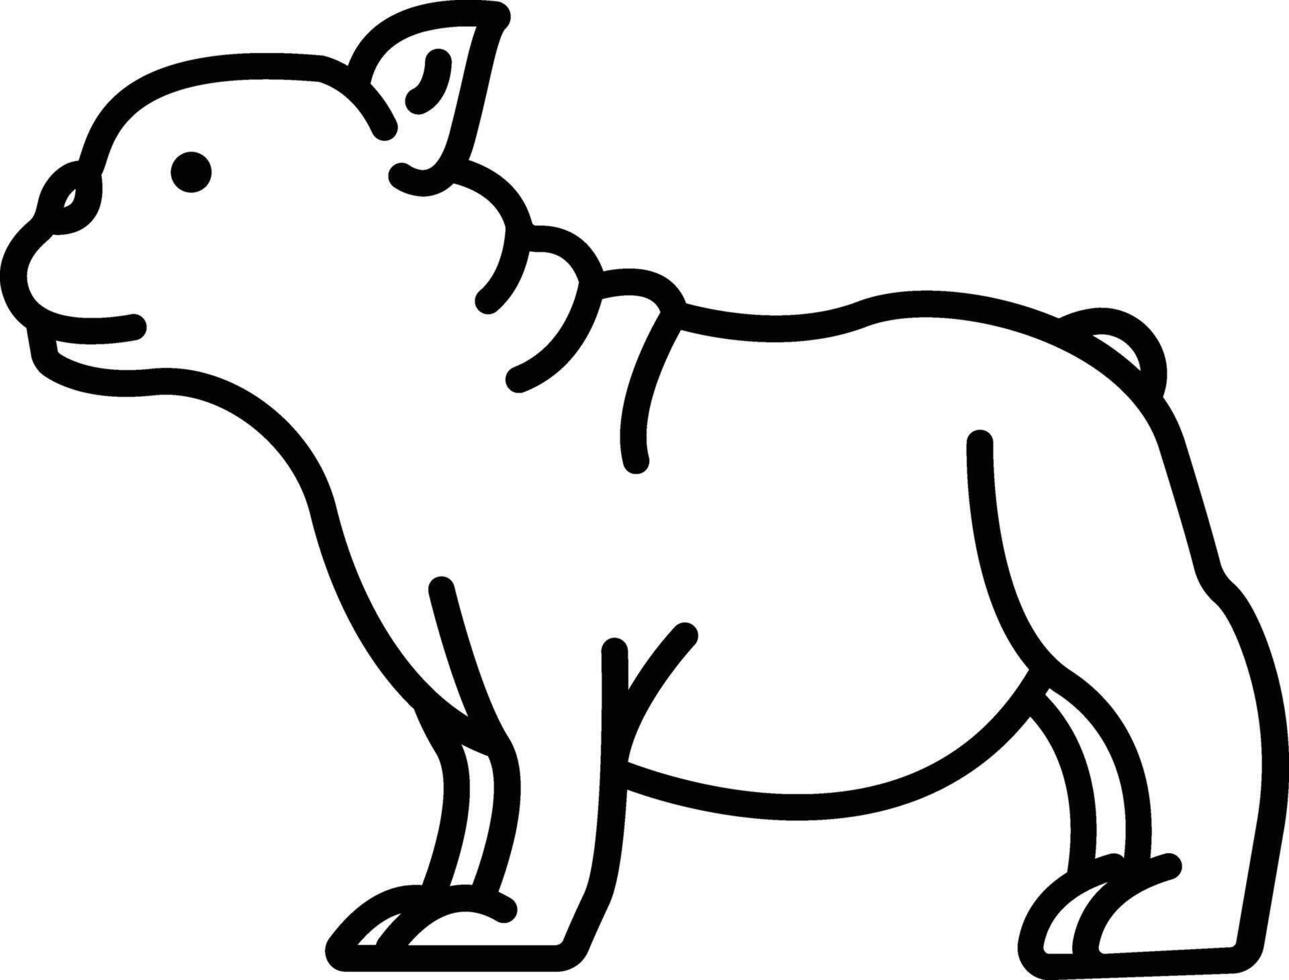 French bulldog outline illustration vector